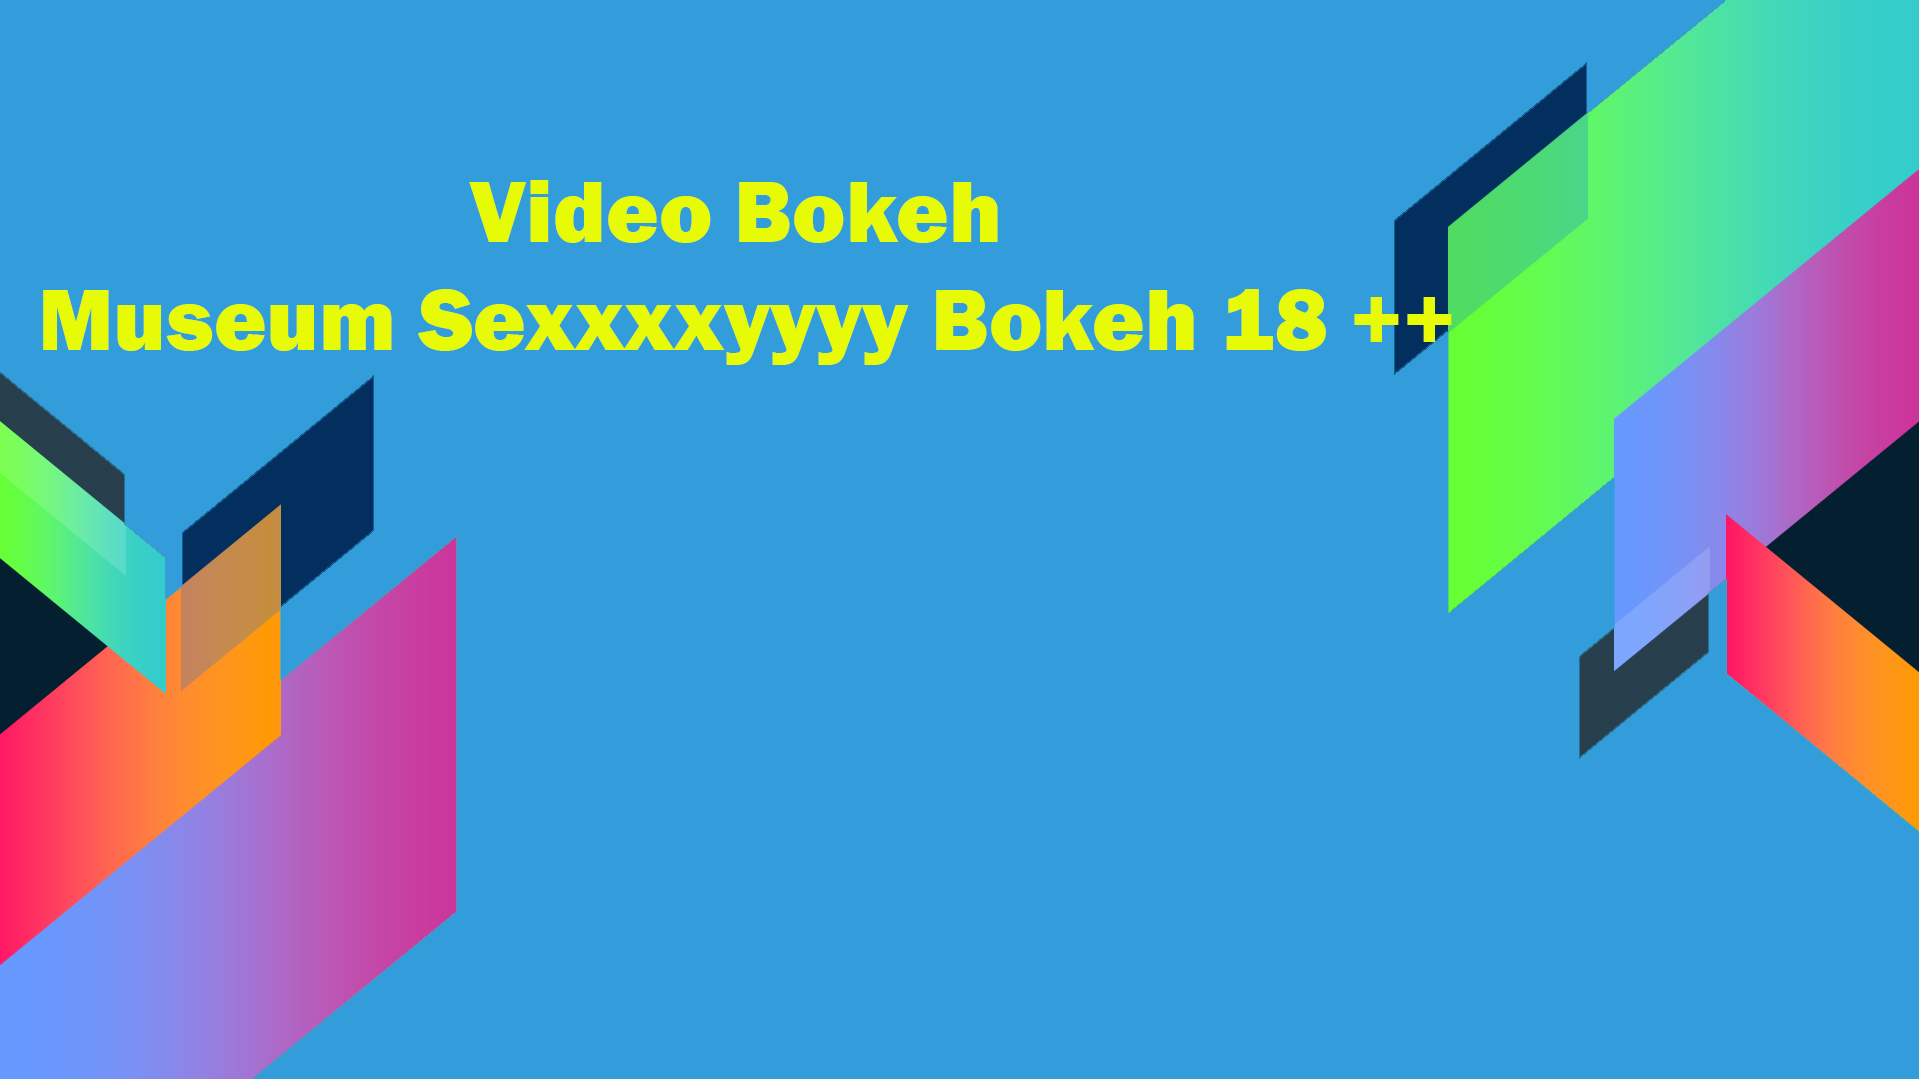 Video Bokeh Museum Sexxxxyyyy Bokeh 18 ++